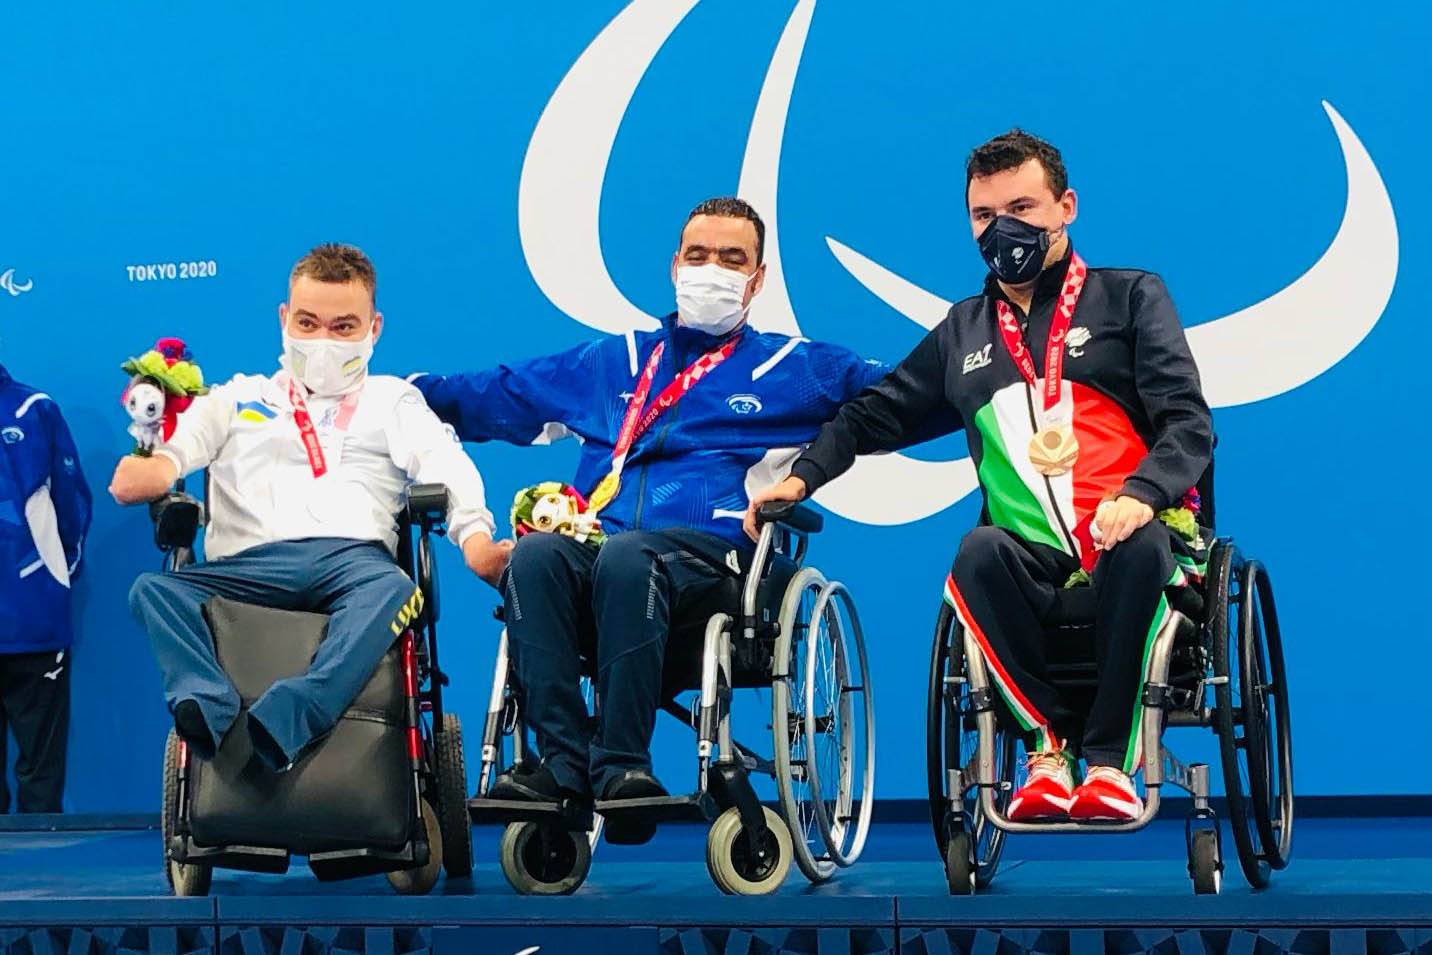 إياد شلبي يفوز بالميدالية الذهبية في الألعاب البارالمبية في طوكيو (تصوير: كيرن ايزكسون، اللجنة البارالمبية في إسرائيل)